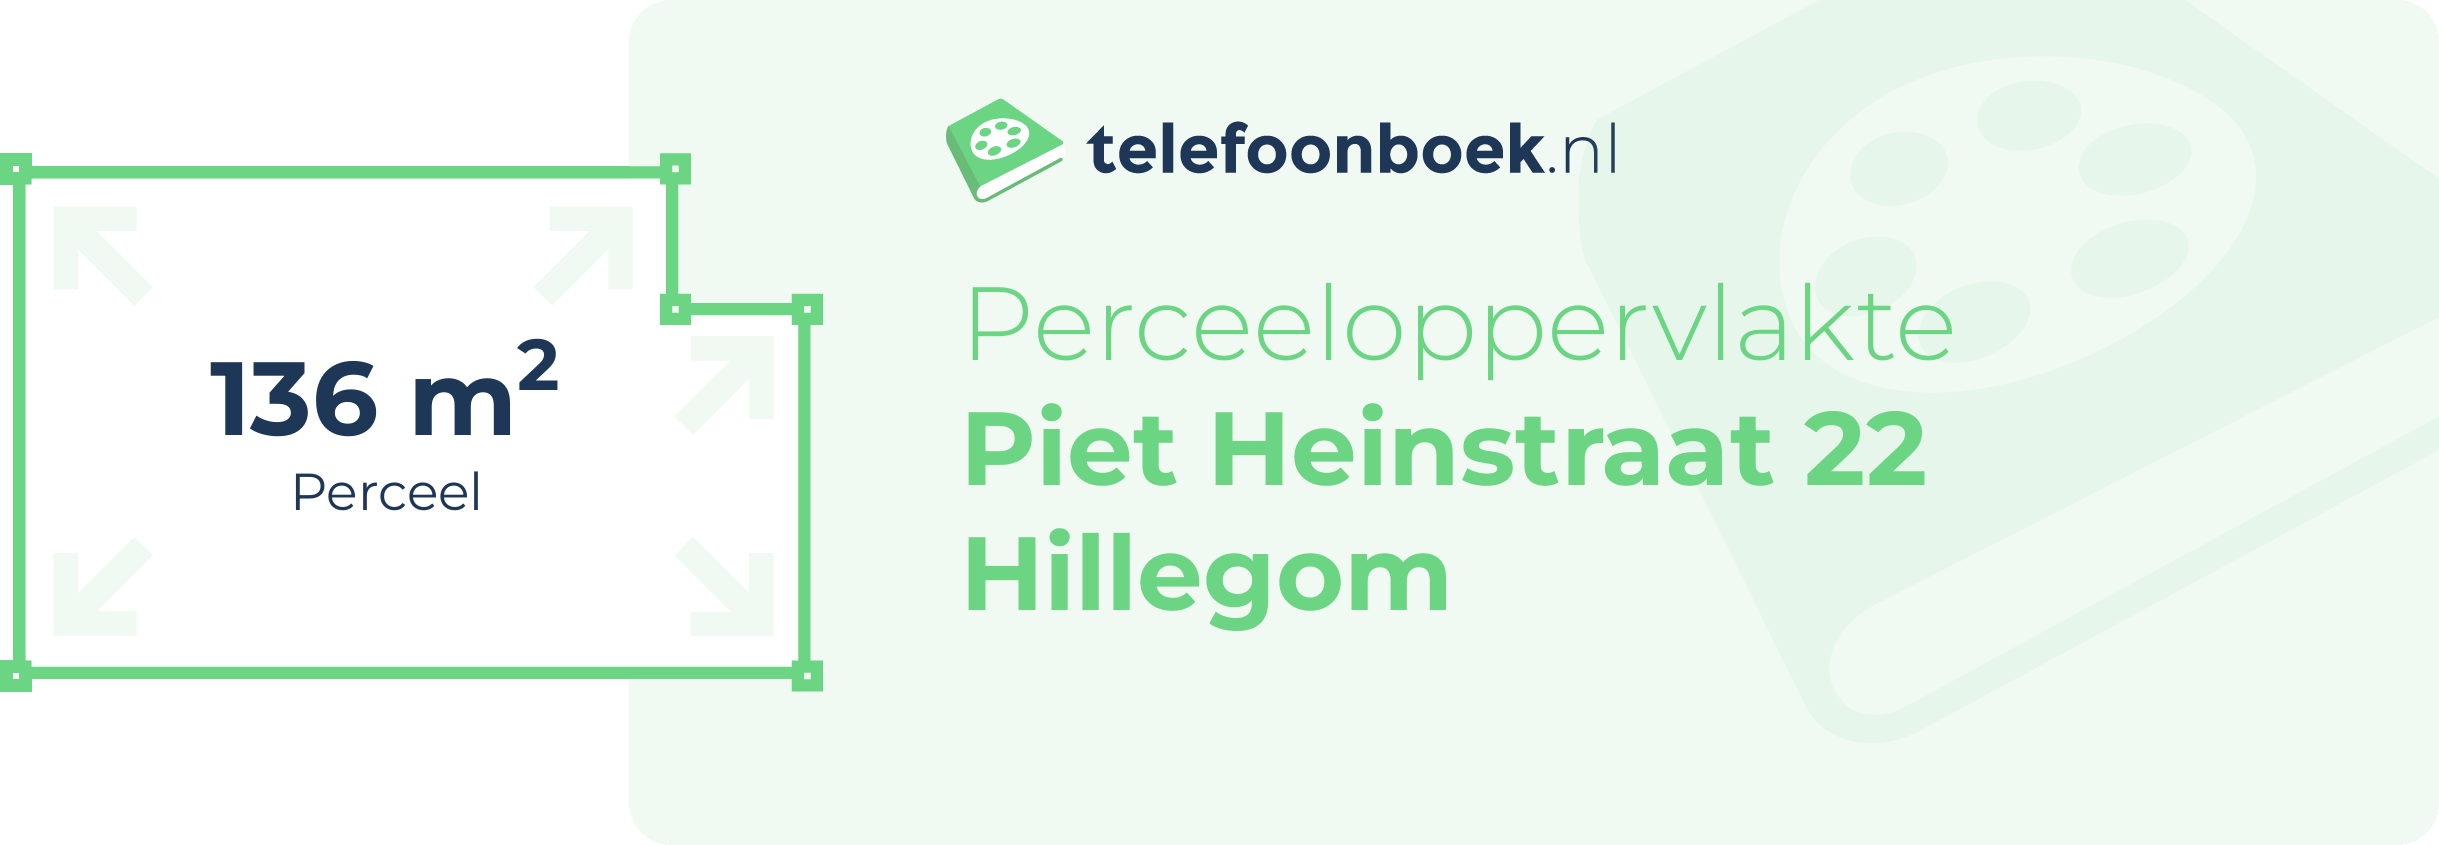 Perceeloppervlakte Piet Heinstraat 22 Hillegom